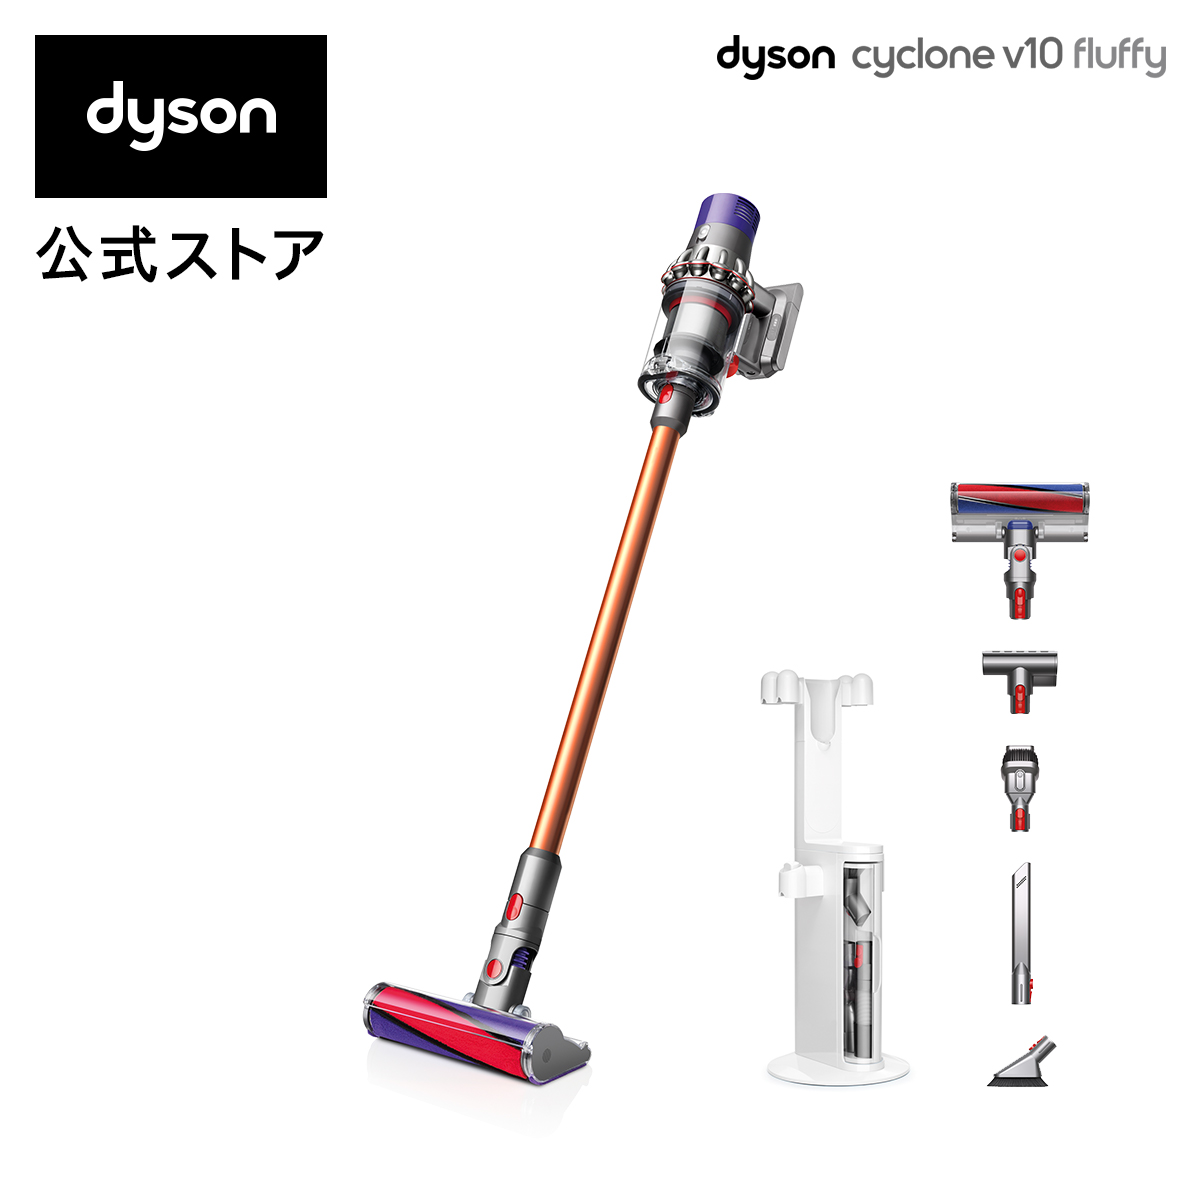 【楽天市場】【フロアドック付セット】ダイソン Dyson Cyclone V10 Fluffy サイクロン式 コードレス掃除機 dyson